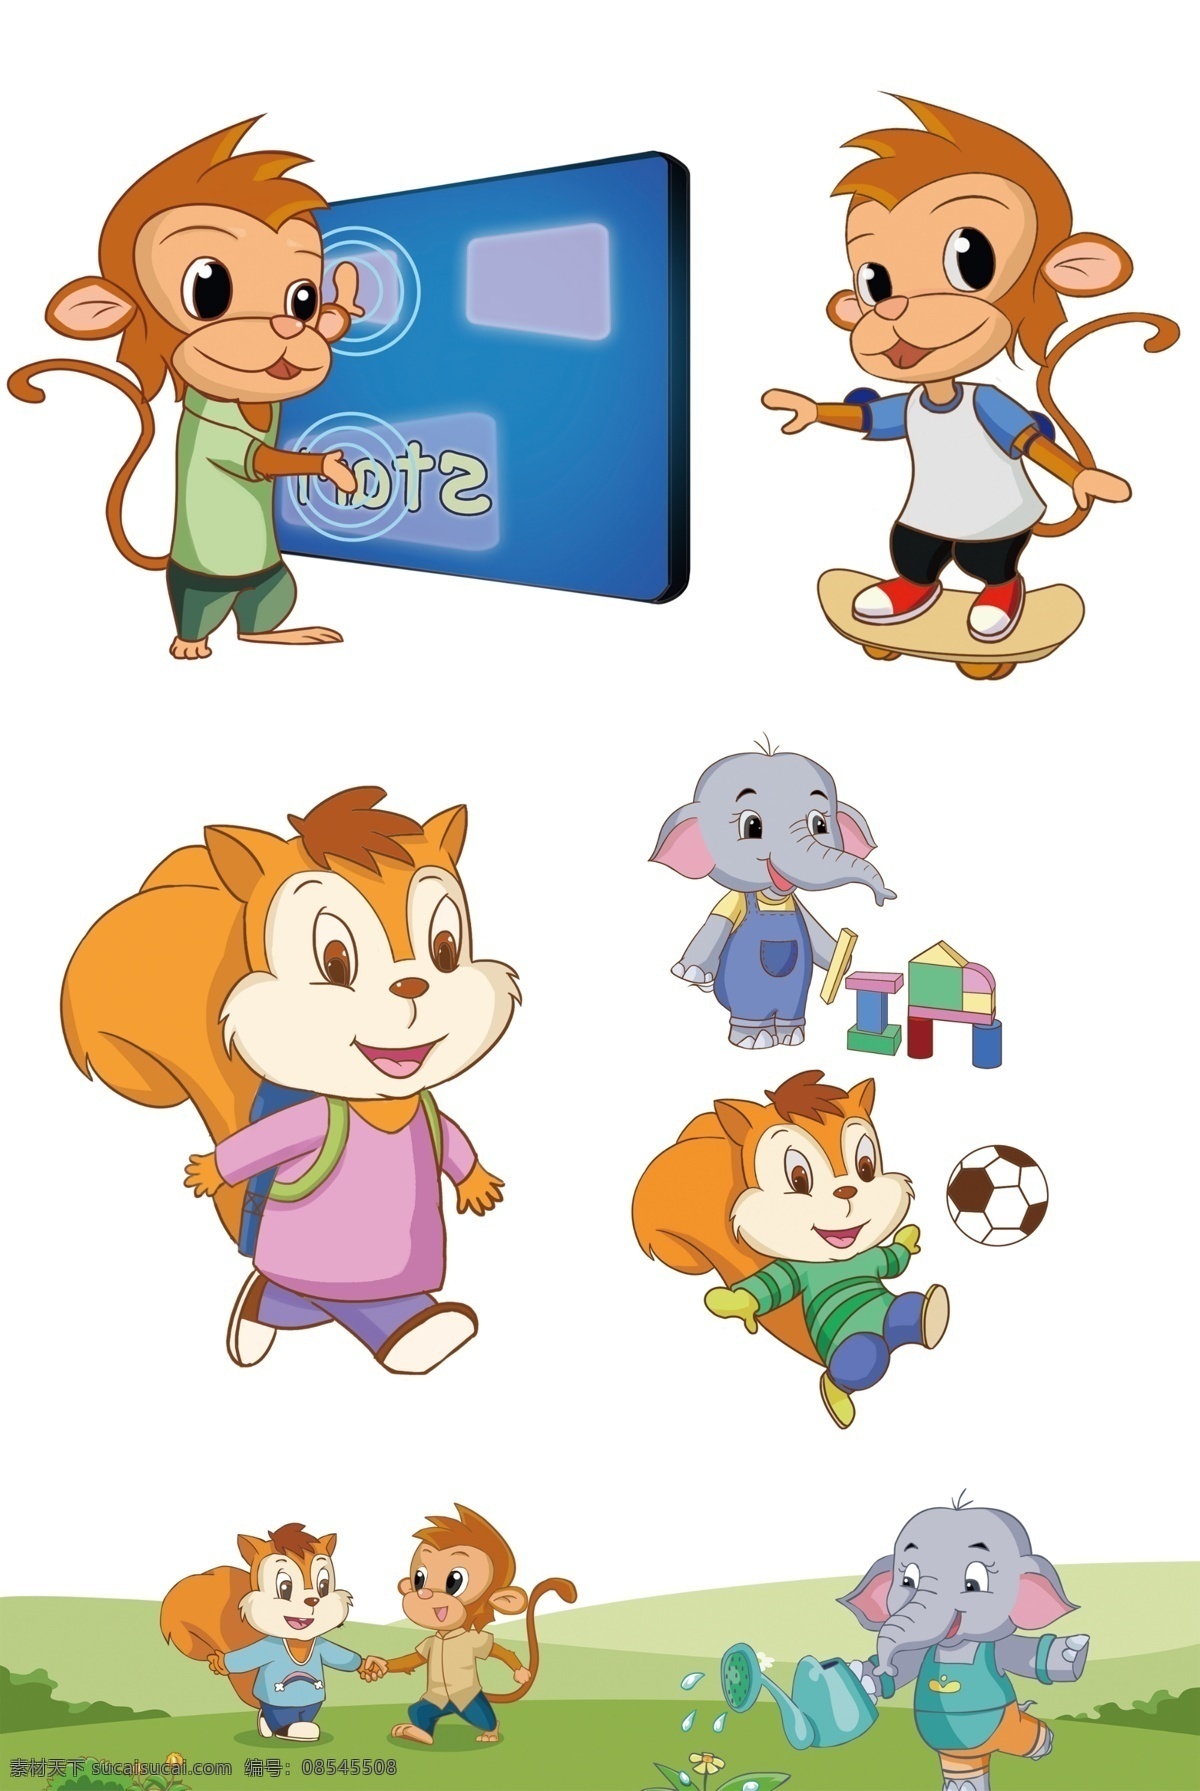 卡通形象 松鼠 猴子 大象 幼儿园 墙绘 色彩 动漫动画 风景漫画